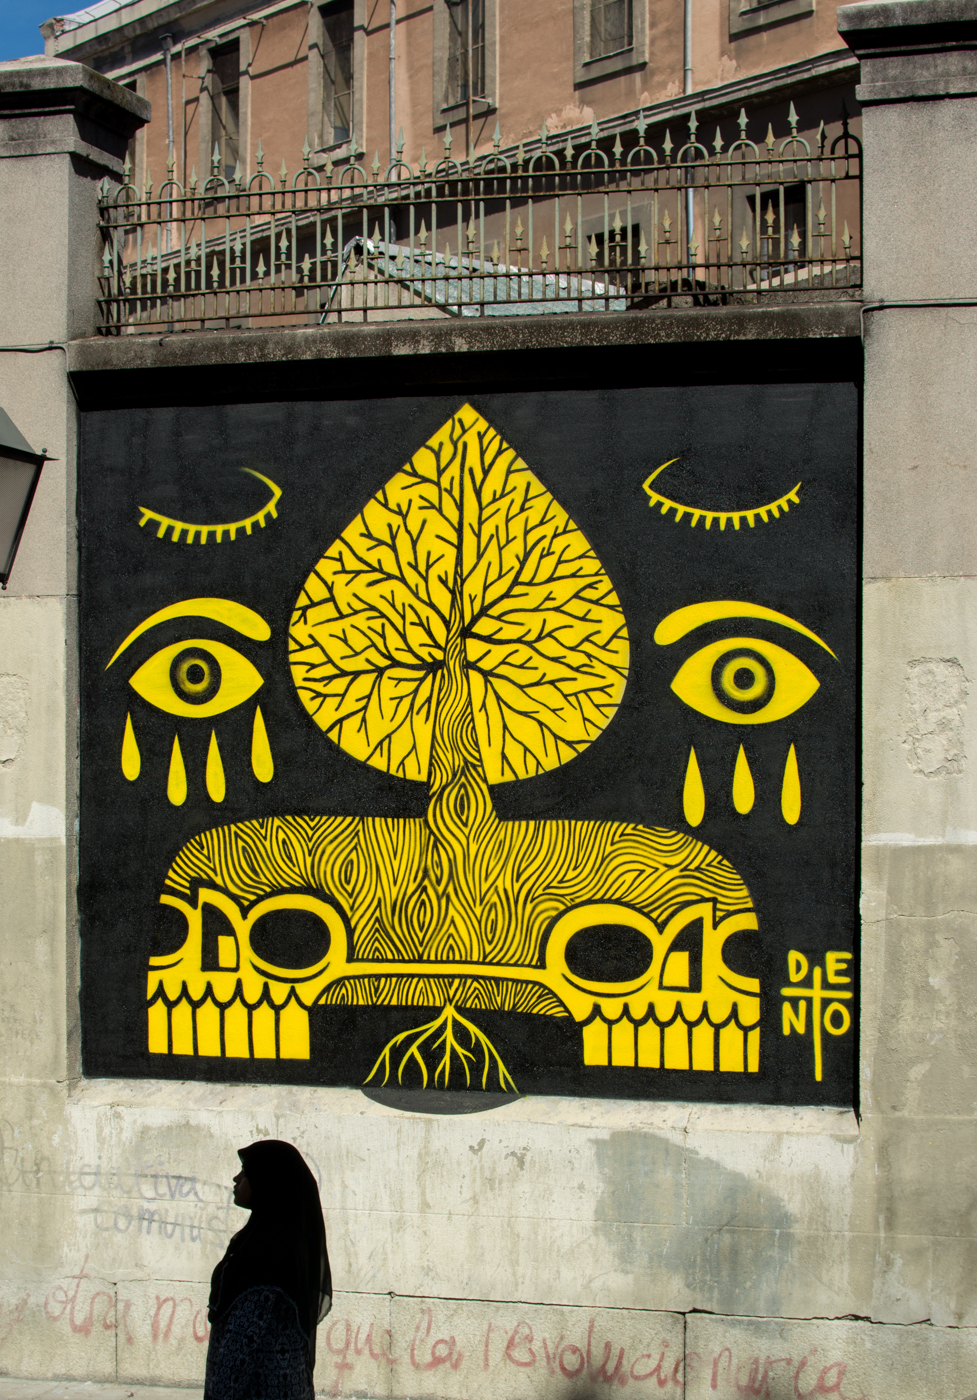 Deno final - MurosTabacalera by Guillermo de la Madrid - Madrid Street Art Project-001.jpg